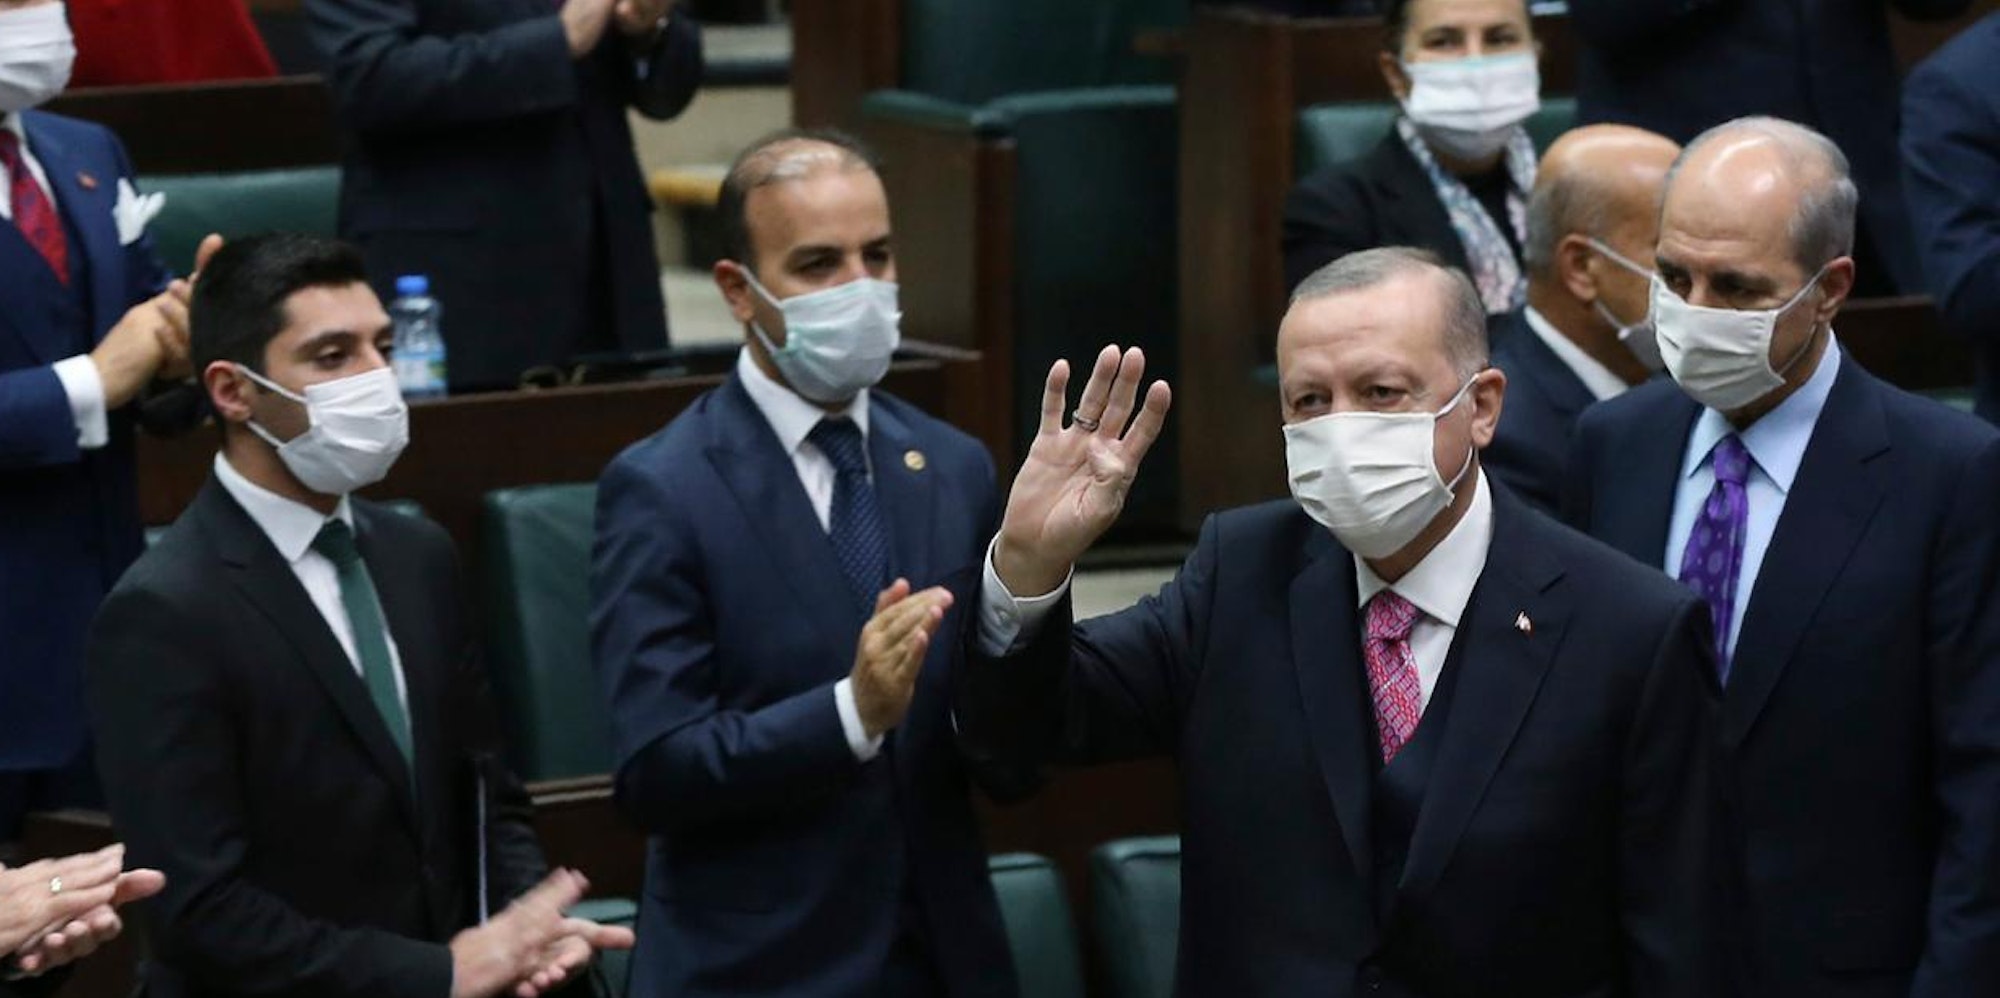 Erdogan mit Maske